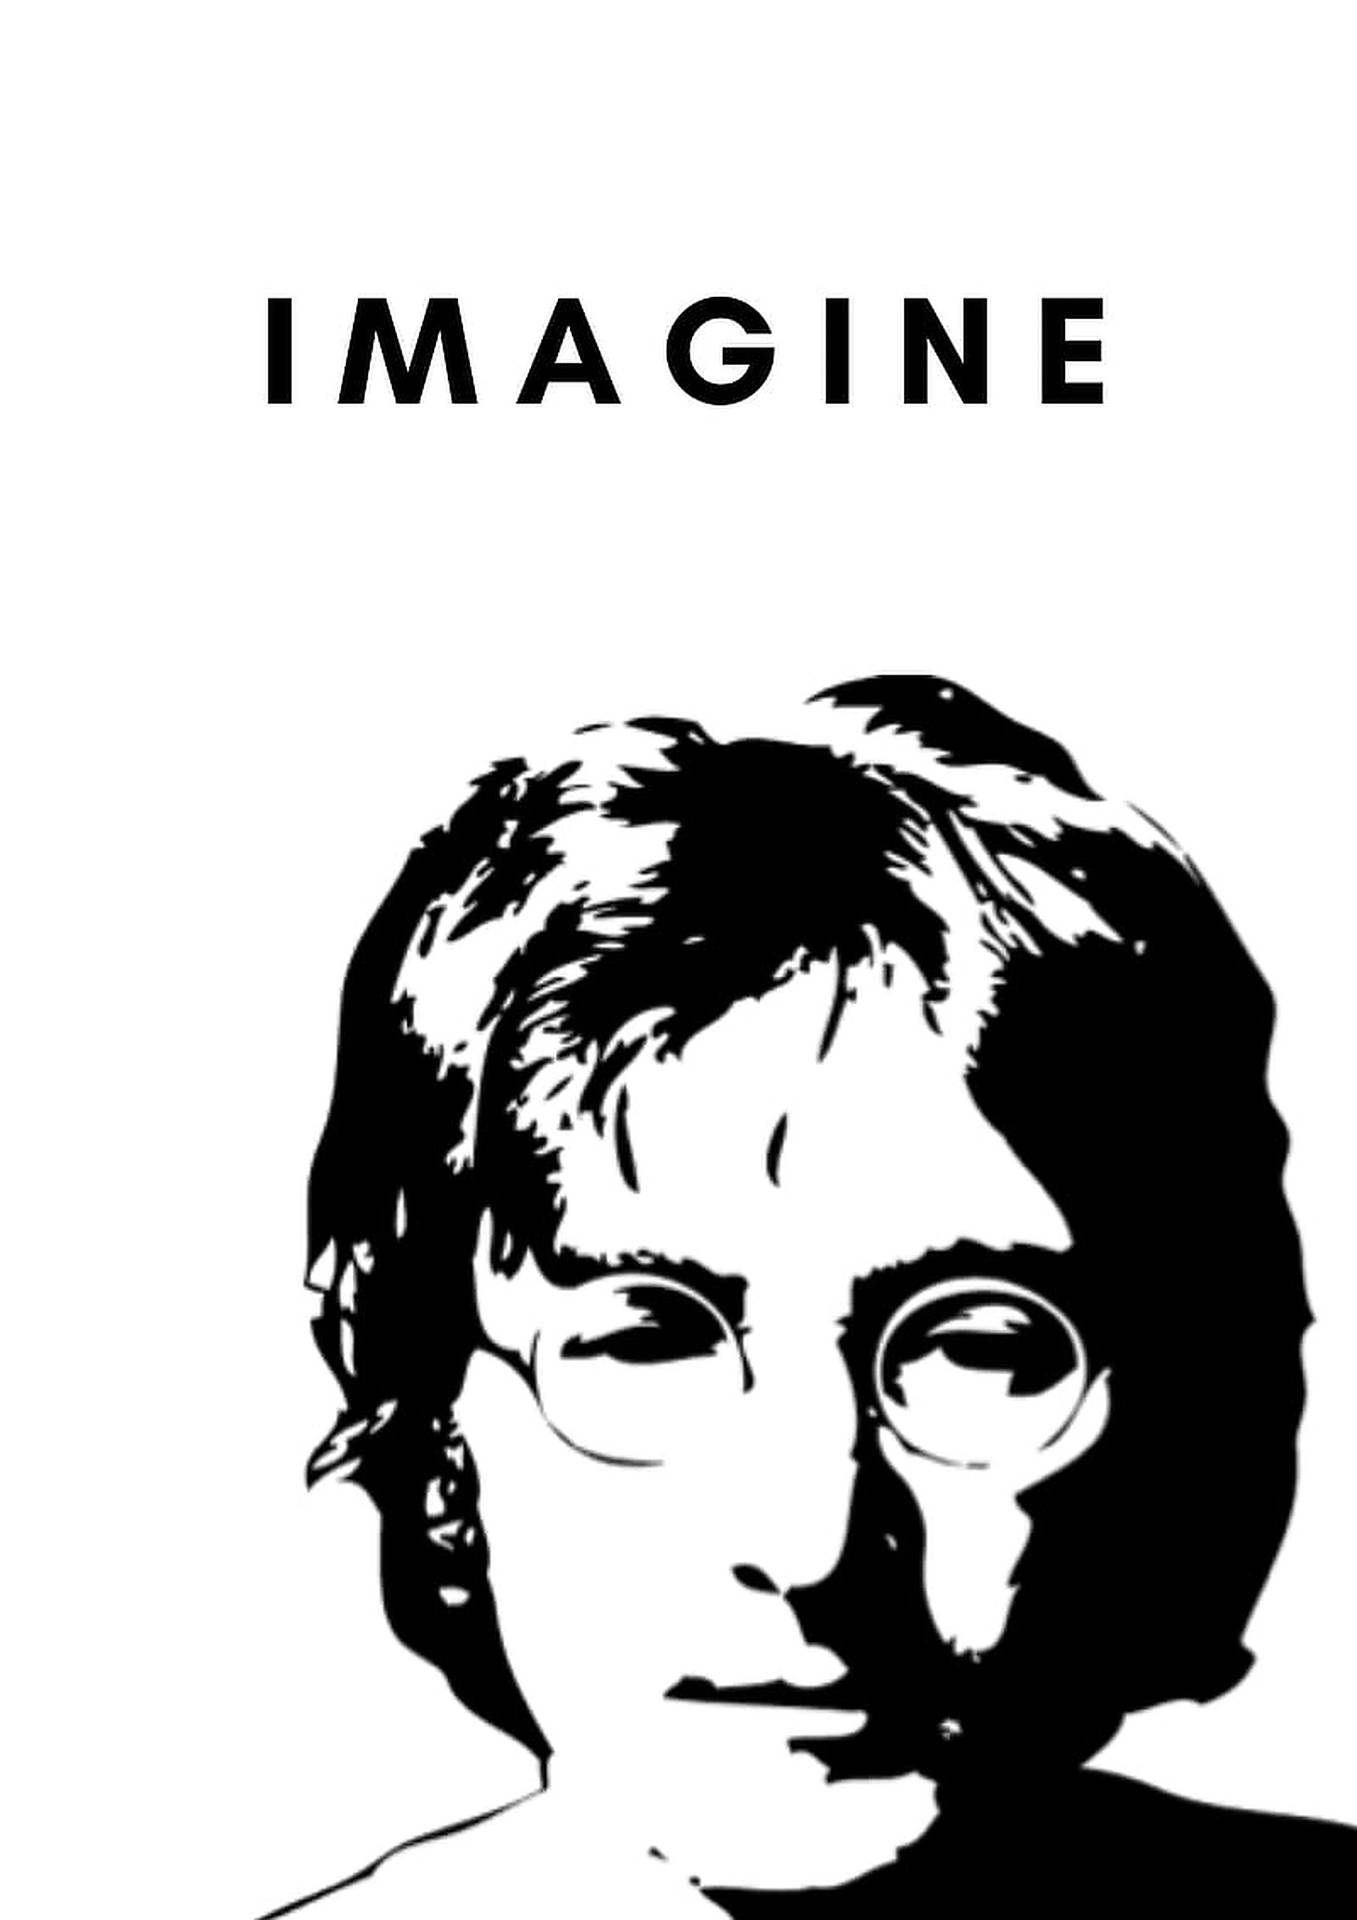 John Lennon Imagine Poster Background